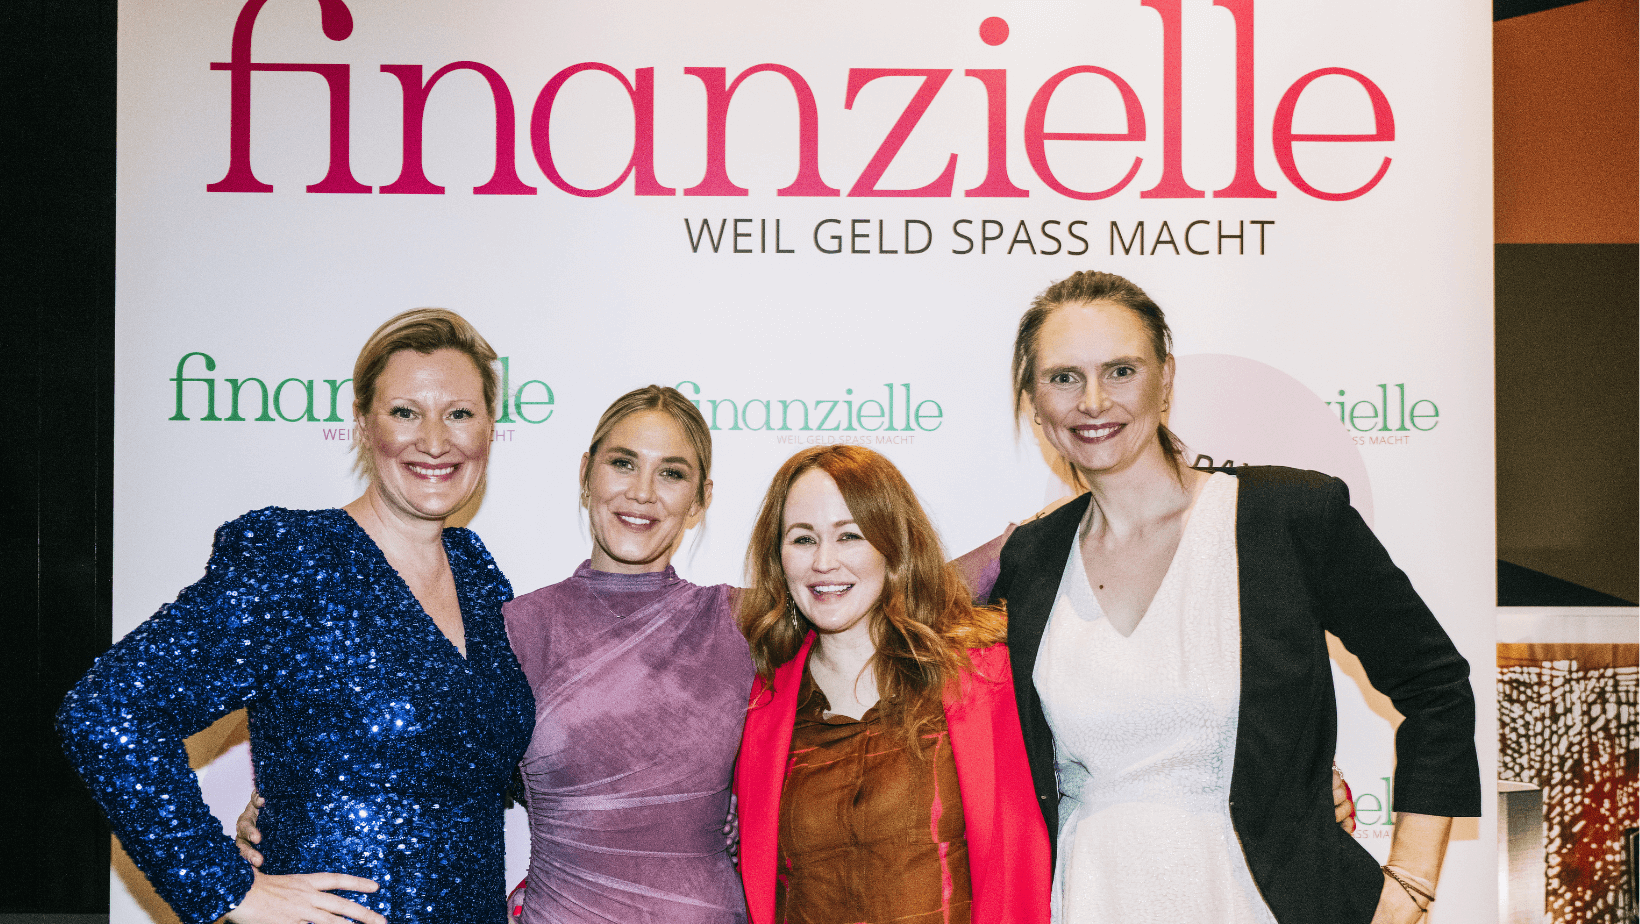 Mehr über den Artikel erfahren Unser Female Finance Event in Berlin: So cool war’s!